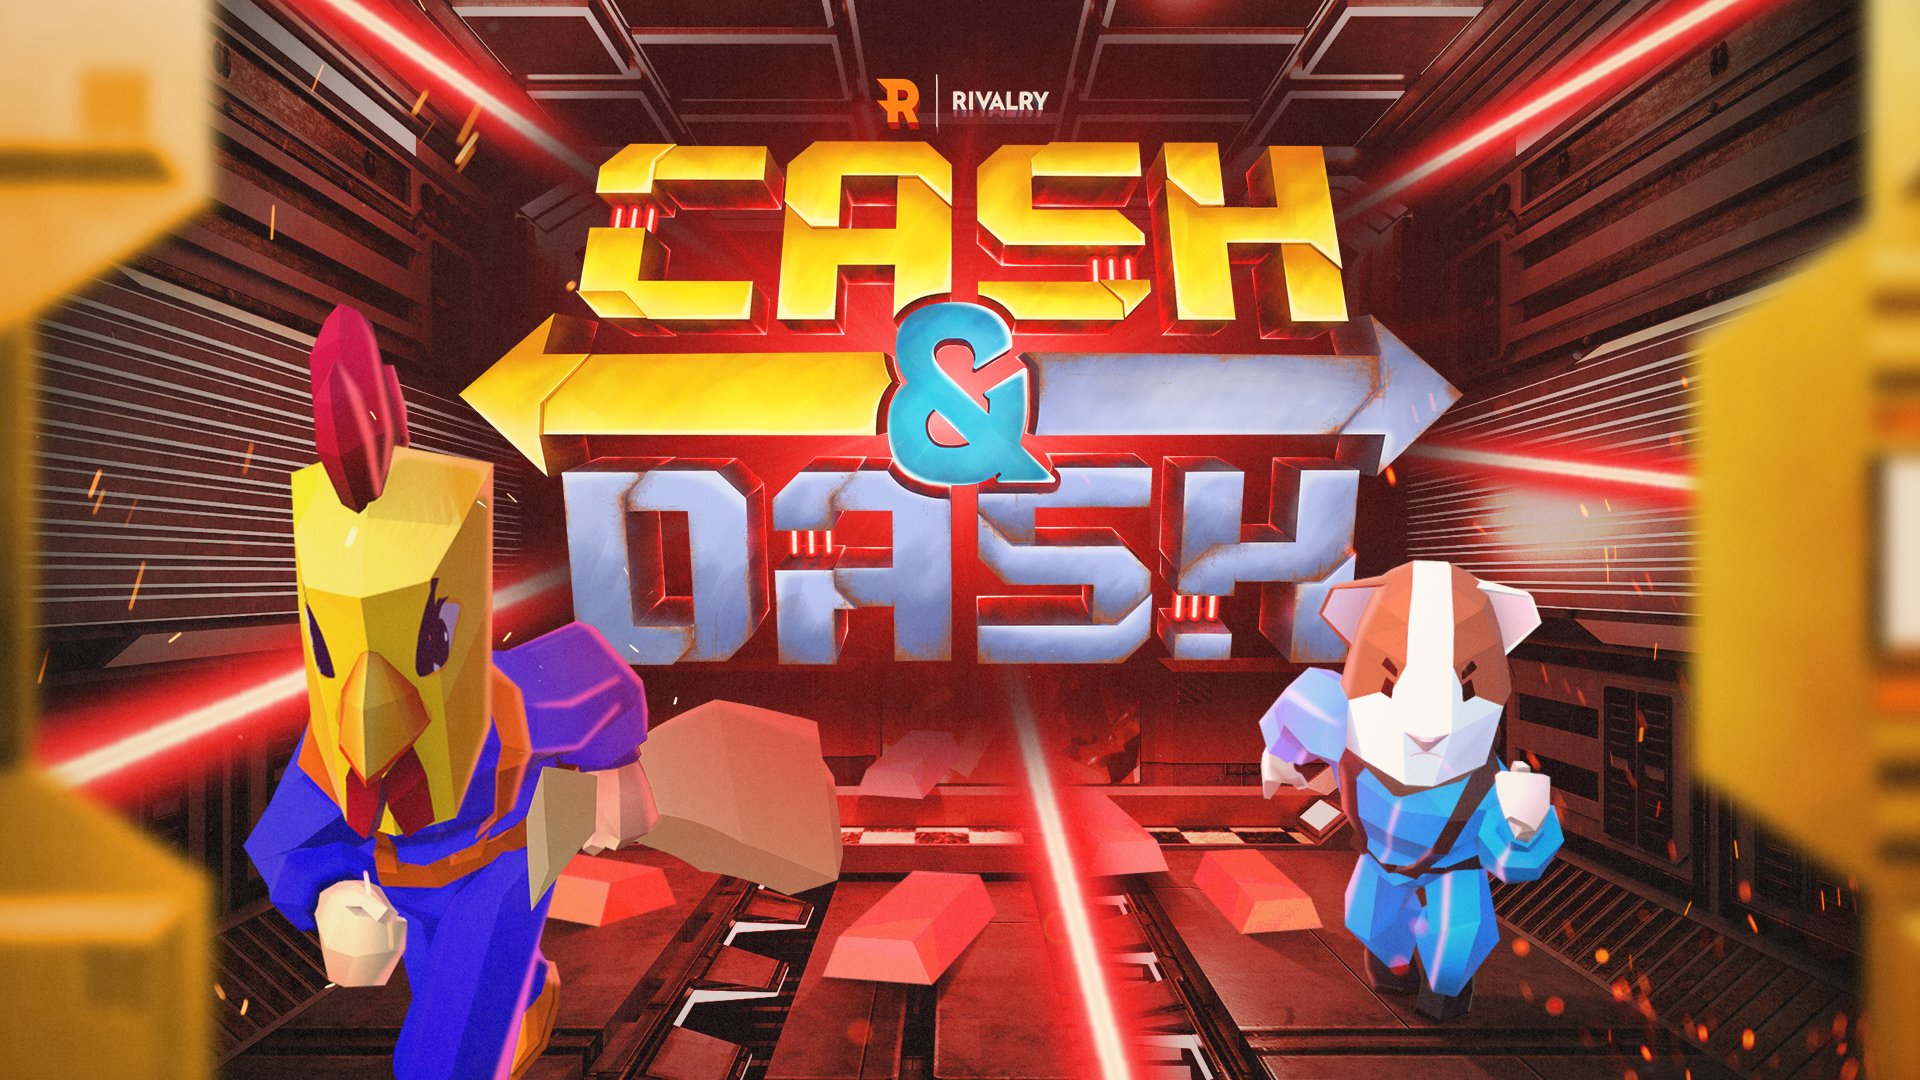 Rivalry Cash & Dash